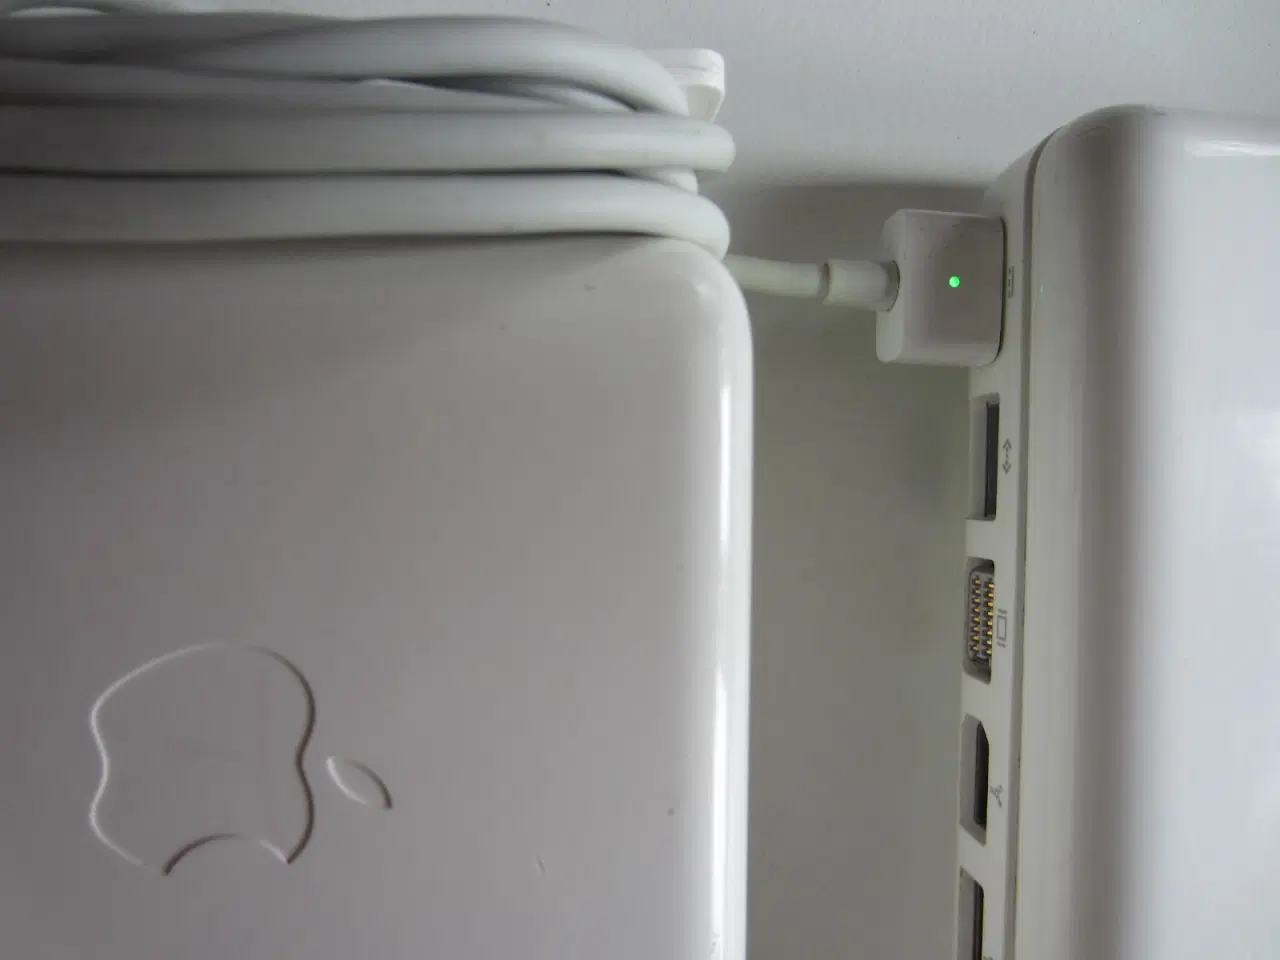 Billede 4 - MacBook 2,1 A1181 2,16 GHz 1 GB ram 160GB harddisk